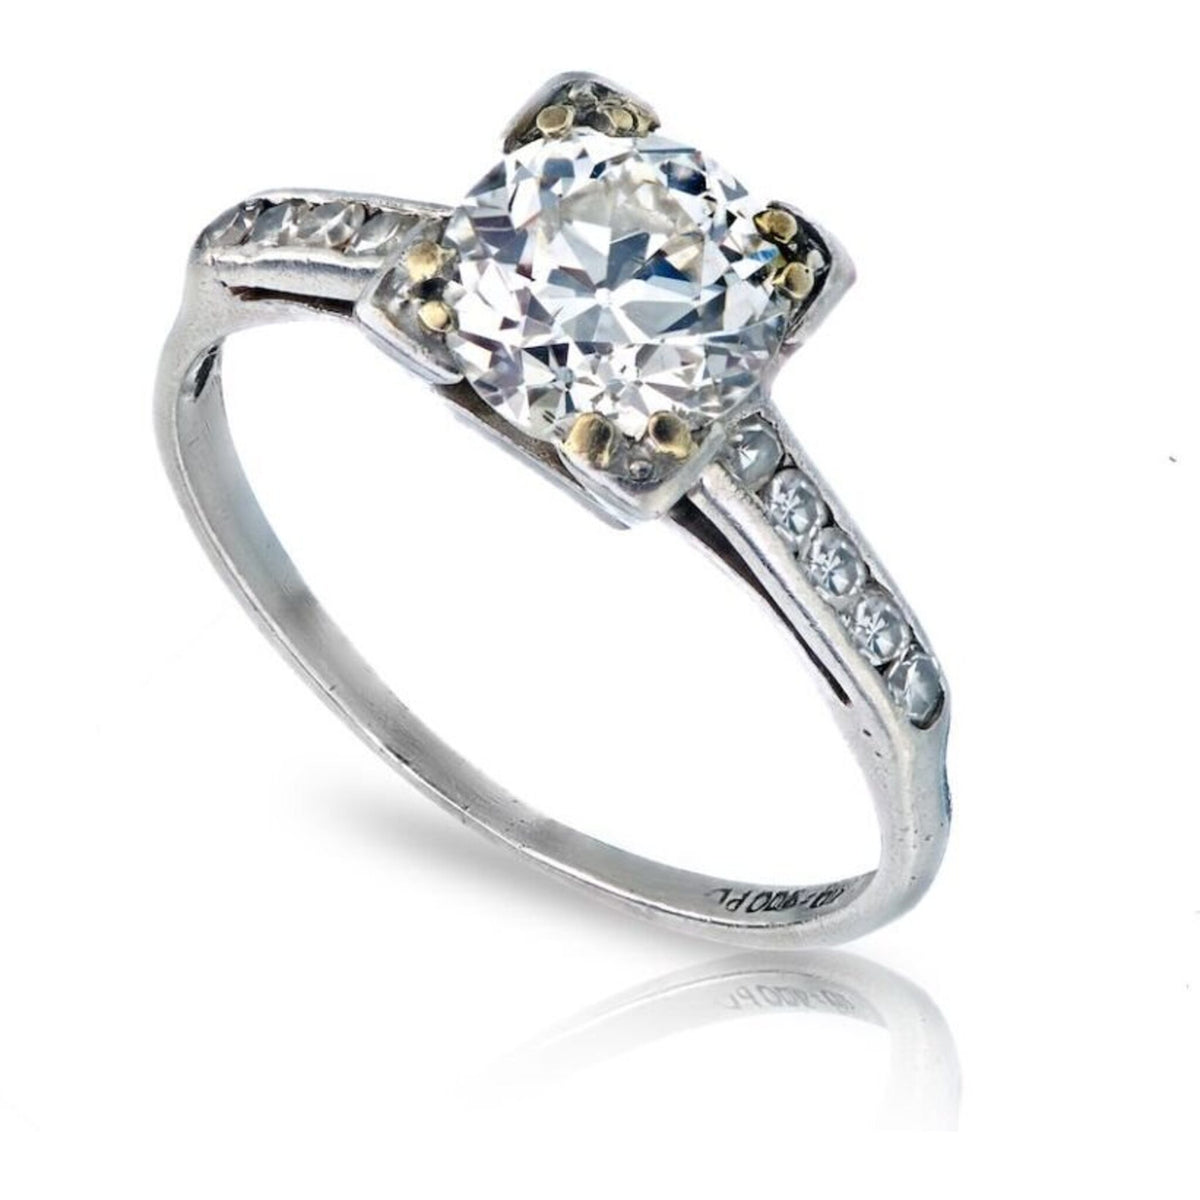 1 Carat Old European Cut Diamond Engagement Ring